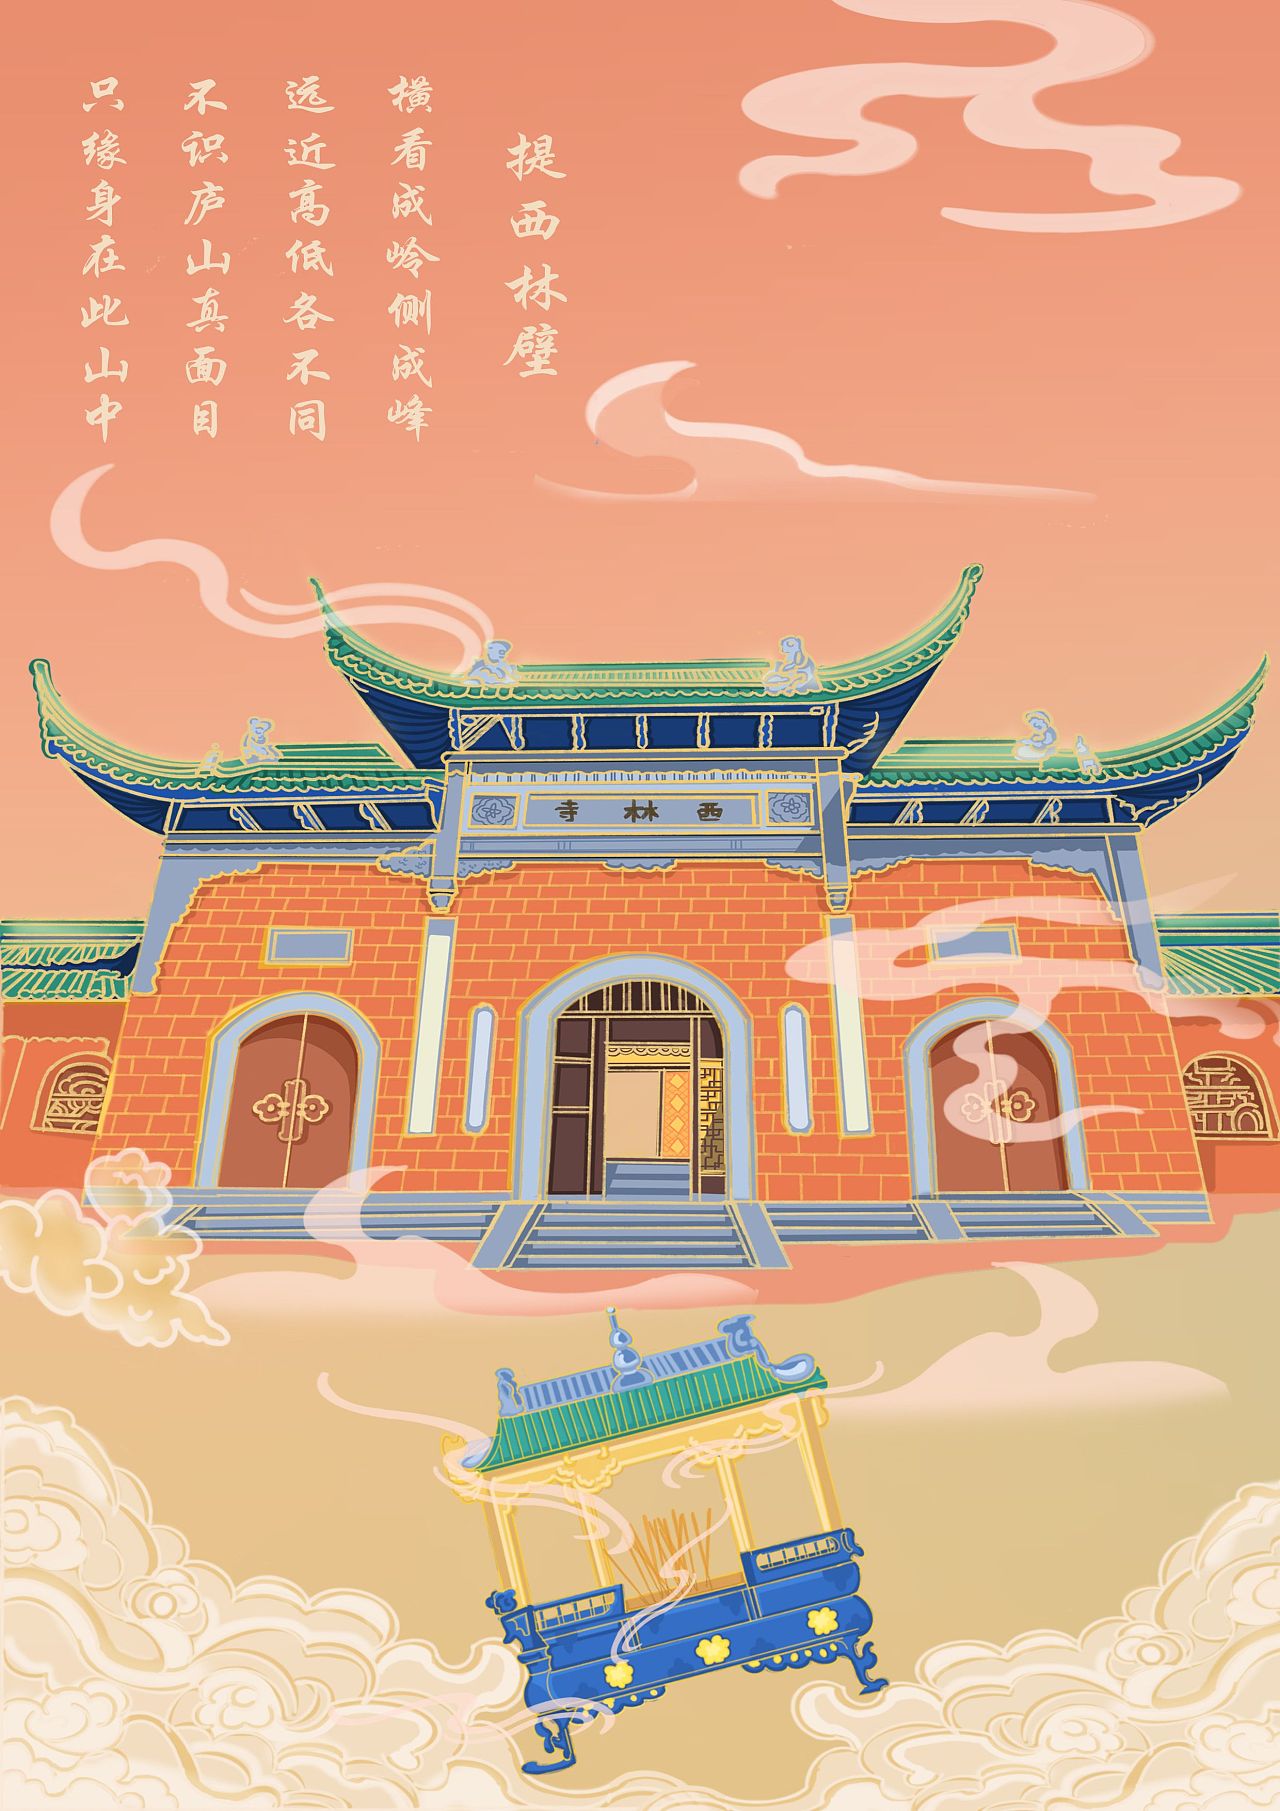 以九江西林寺为主题绘画的插画,气势磅礴,突出建筑是雄伟.